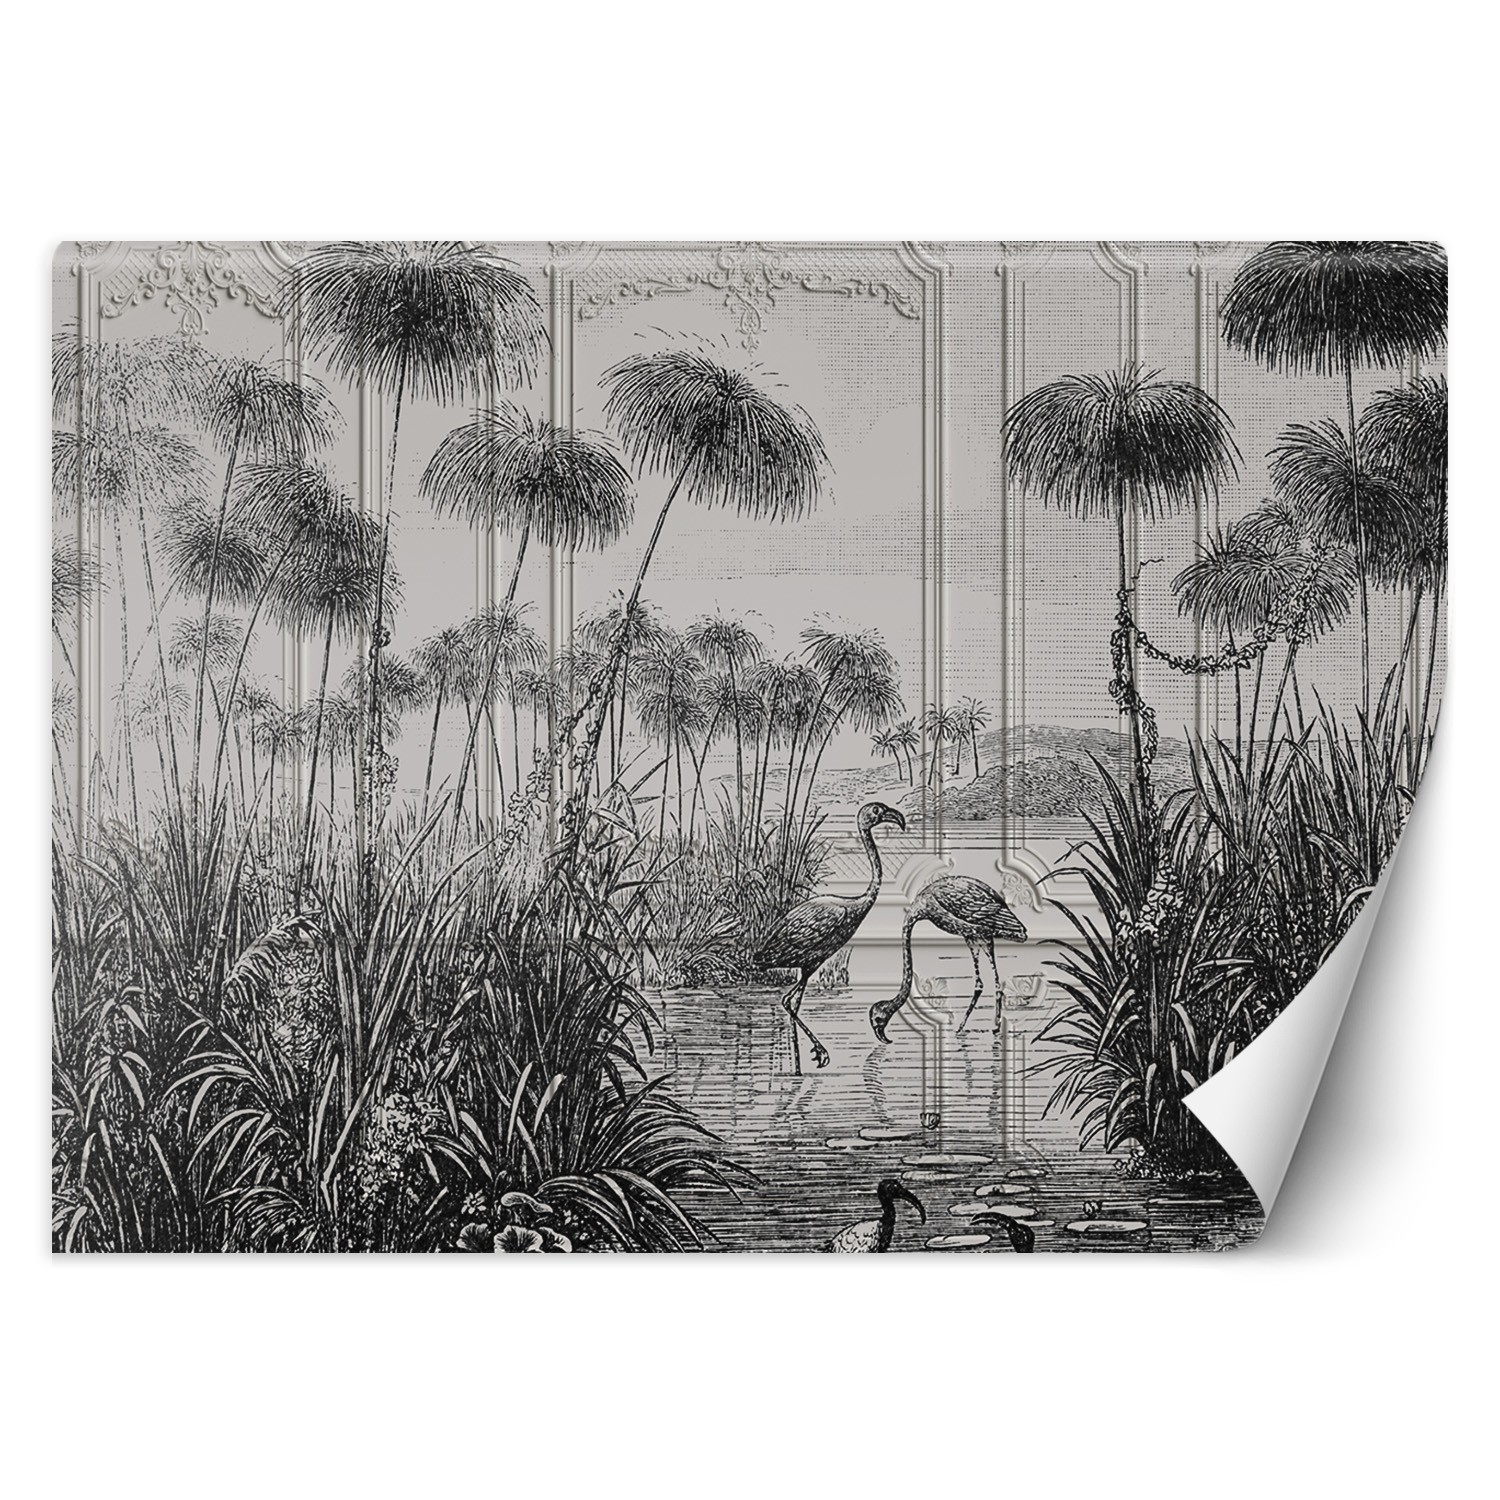 Trend24 – Behang – Vogels In De Vijver – Behangpapier – Fotobehang 3D – Behang Woonkamer – 450x315x2 cm – Incl. behanglijm